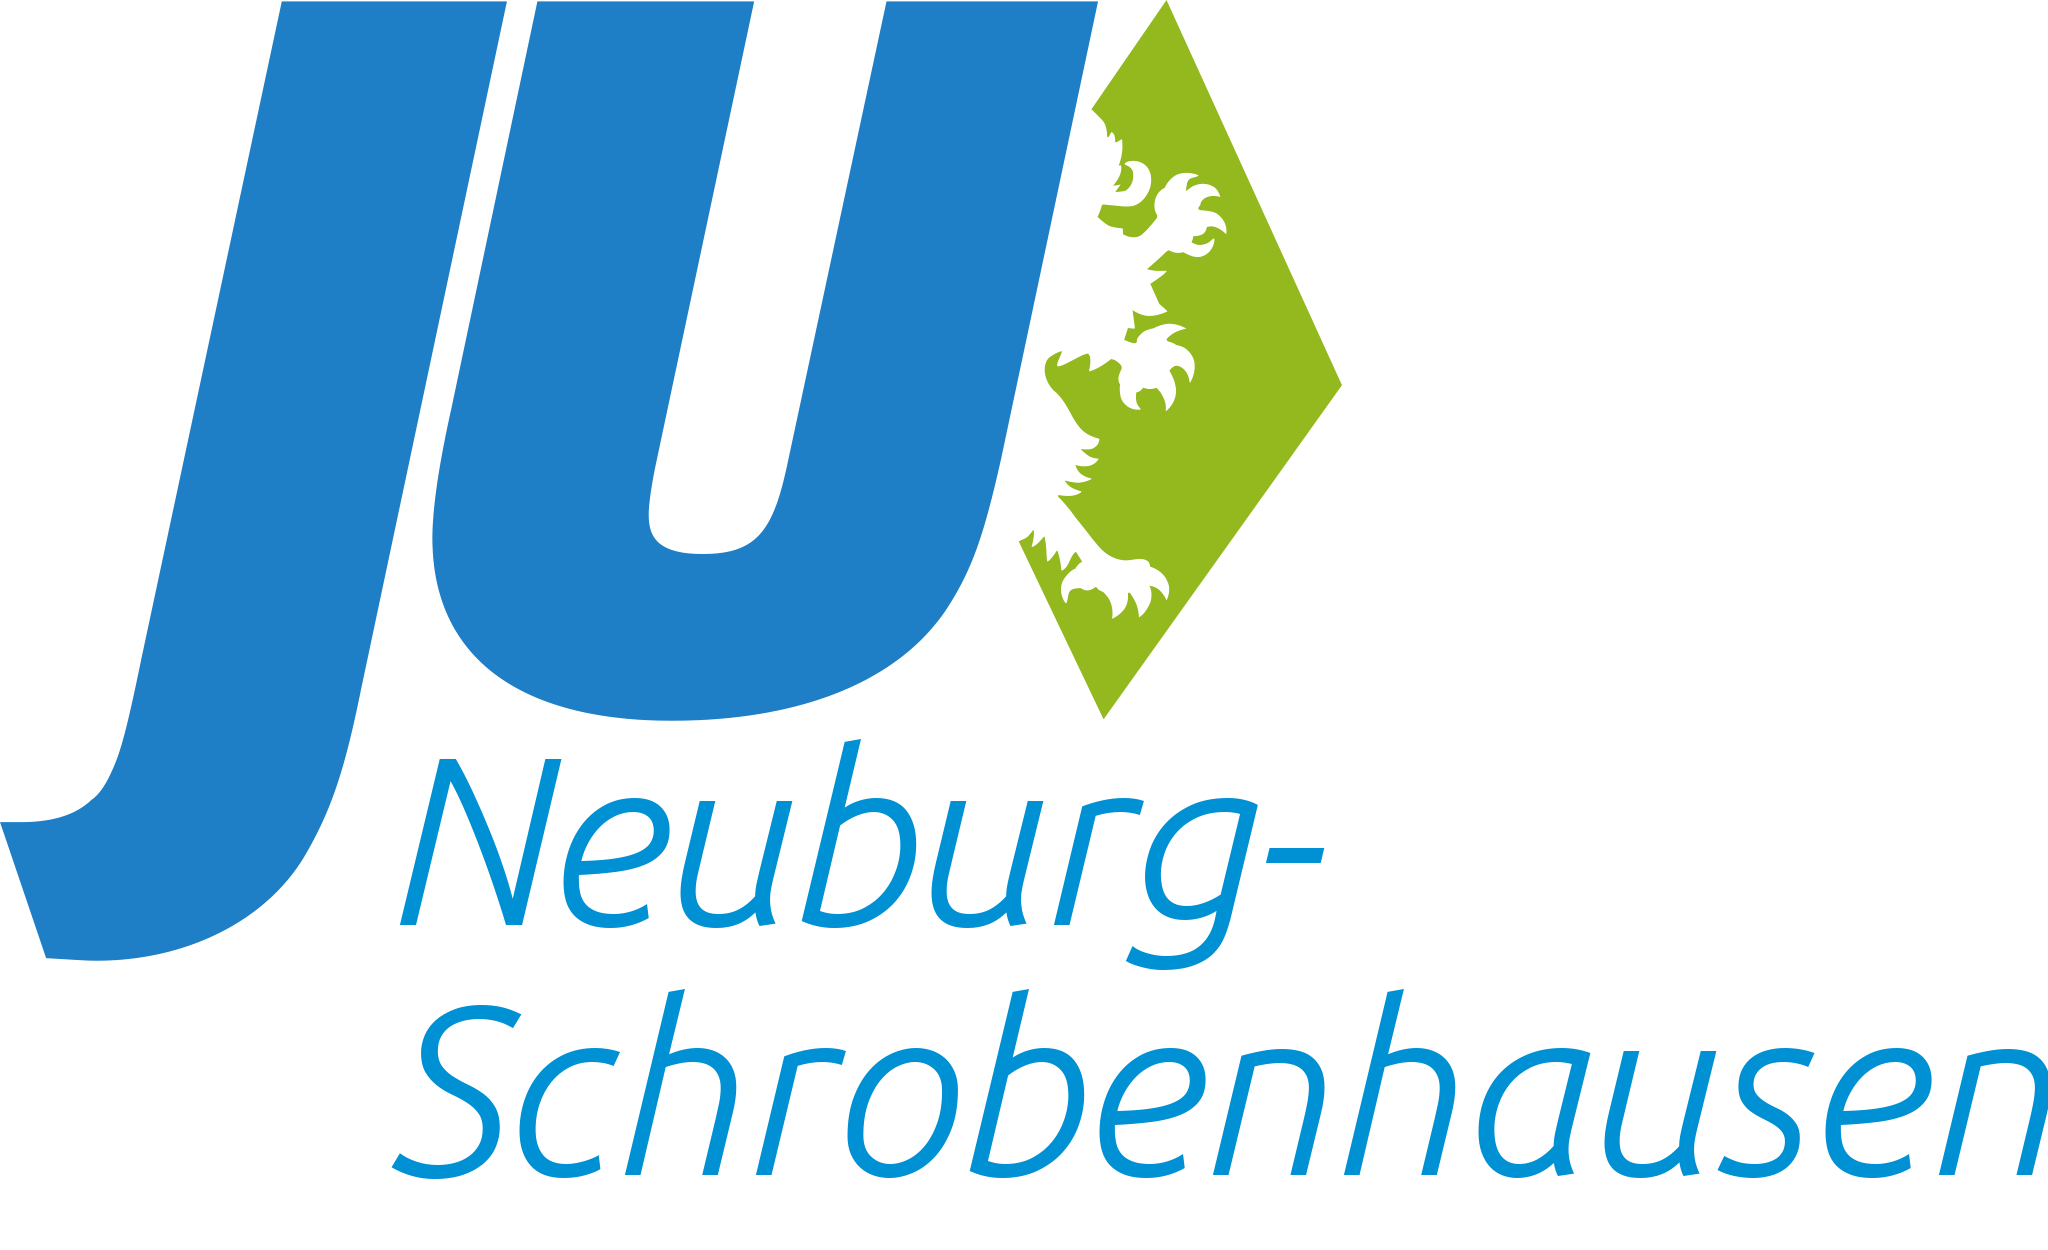 KV Neuburg-Schrobenhausen